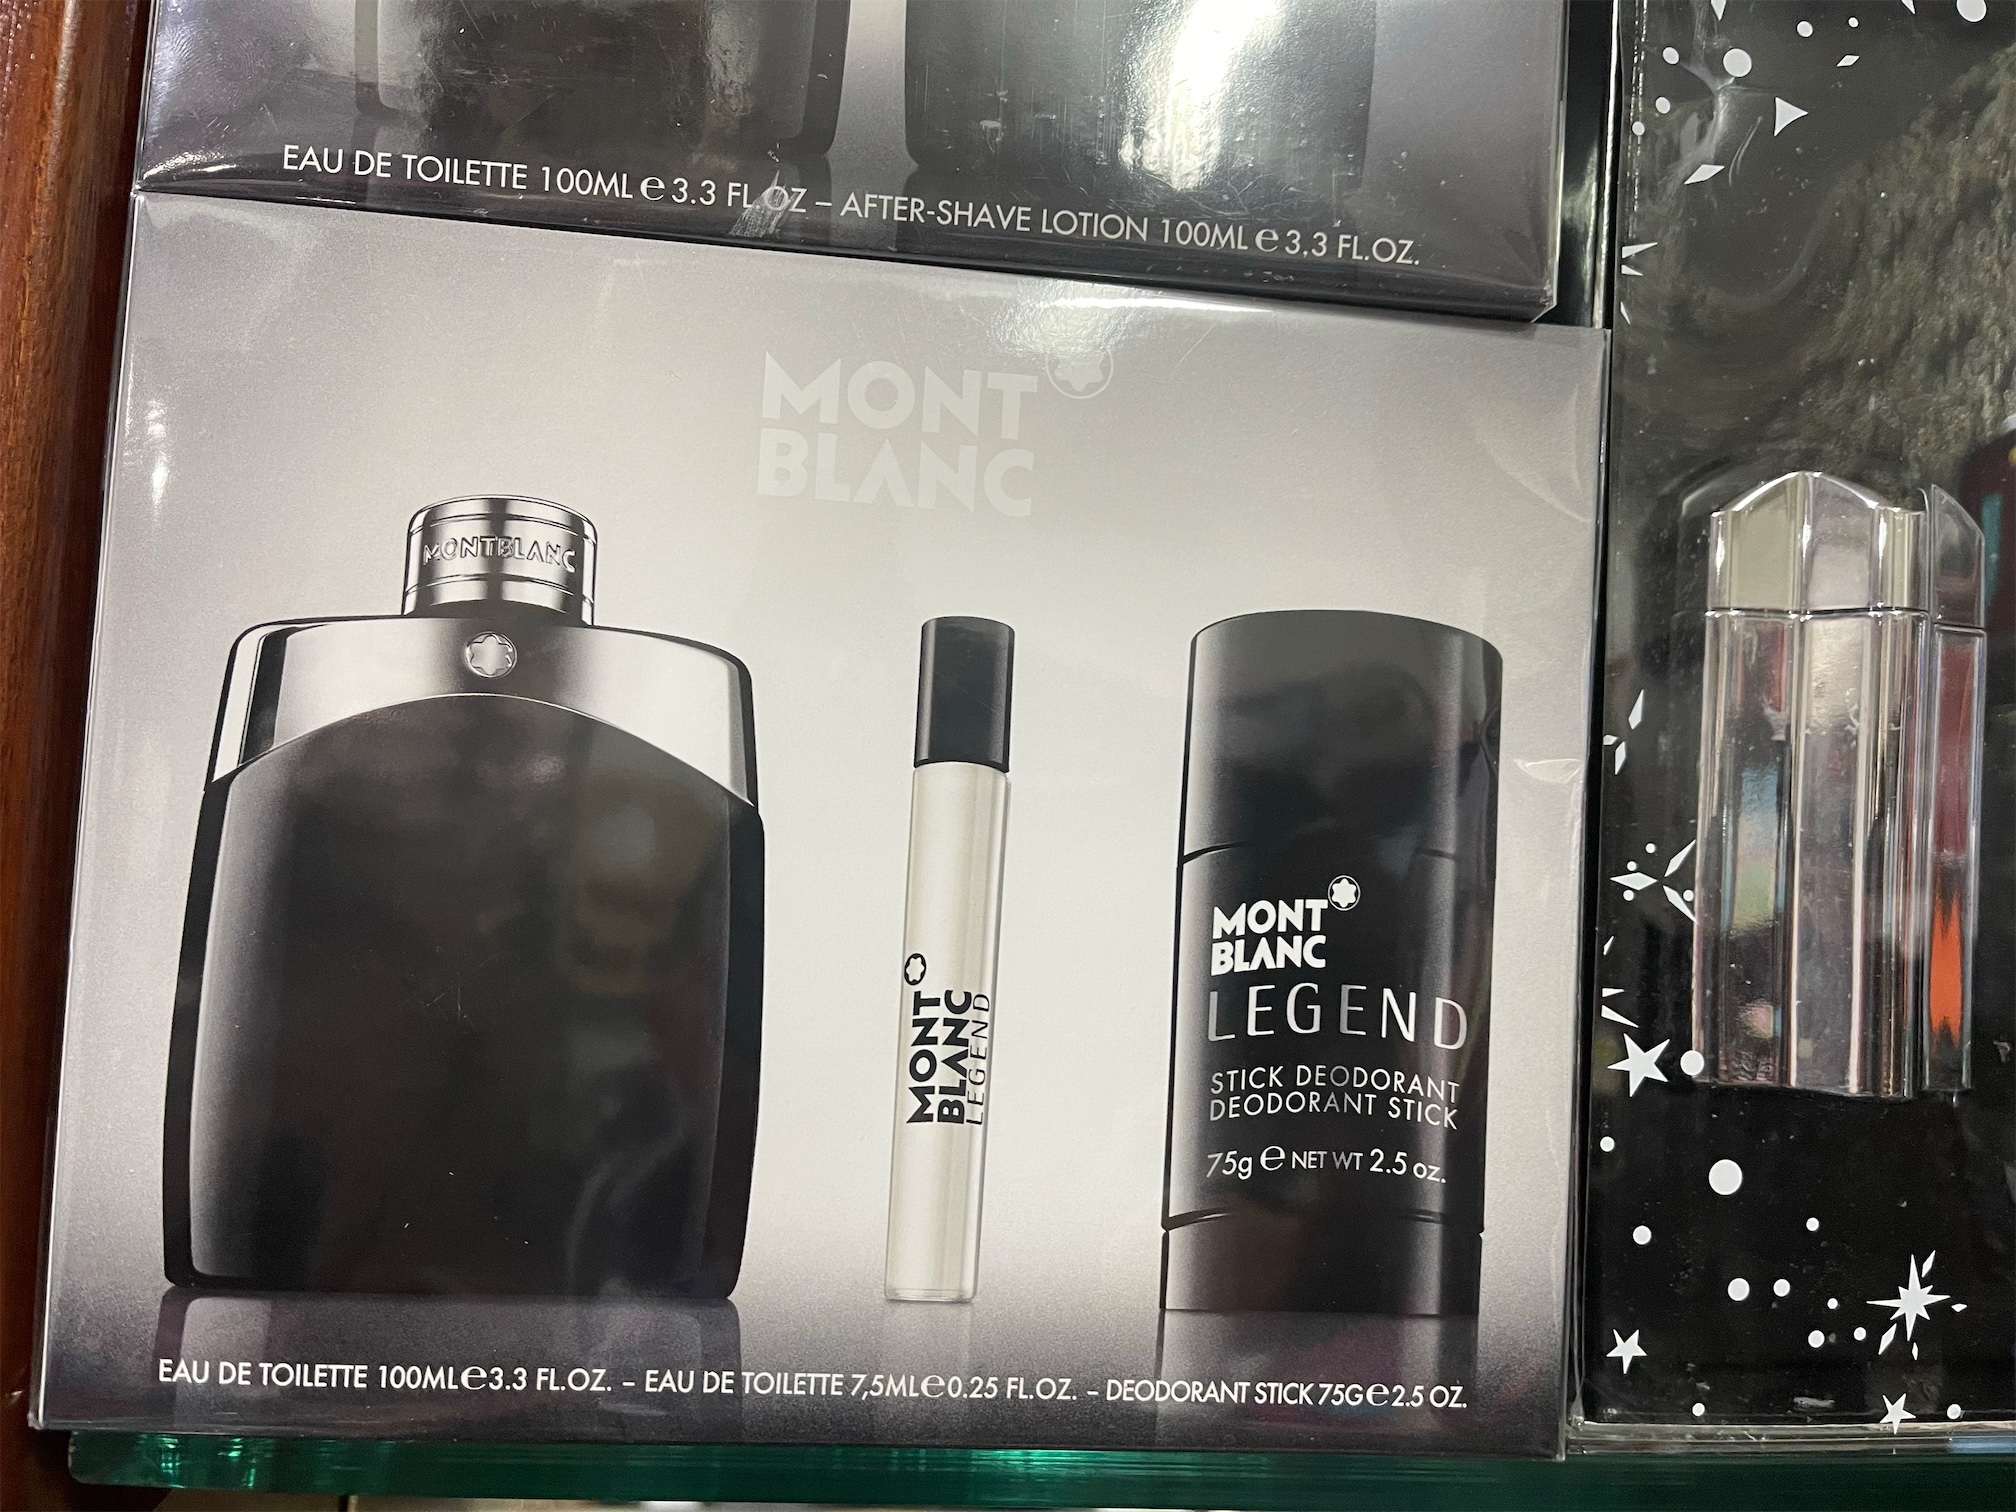 salud y belleza - Set perfume Mont Blanc. Original. AL POR MAYOR Y AL DETALLE 0